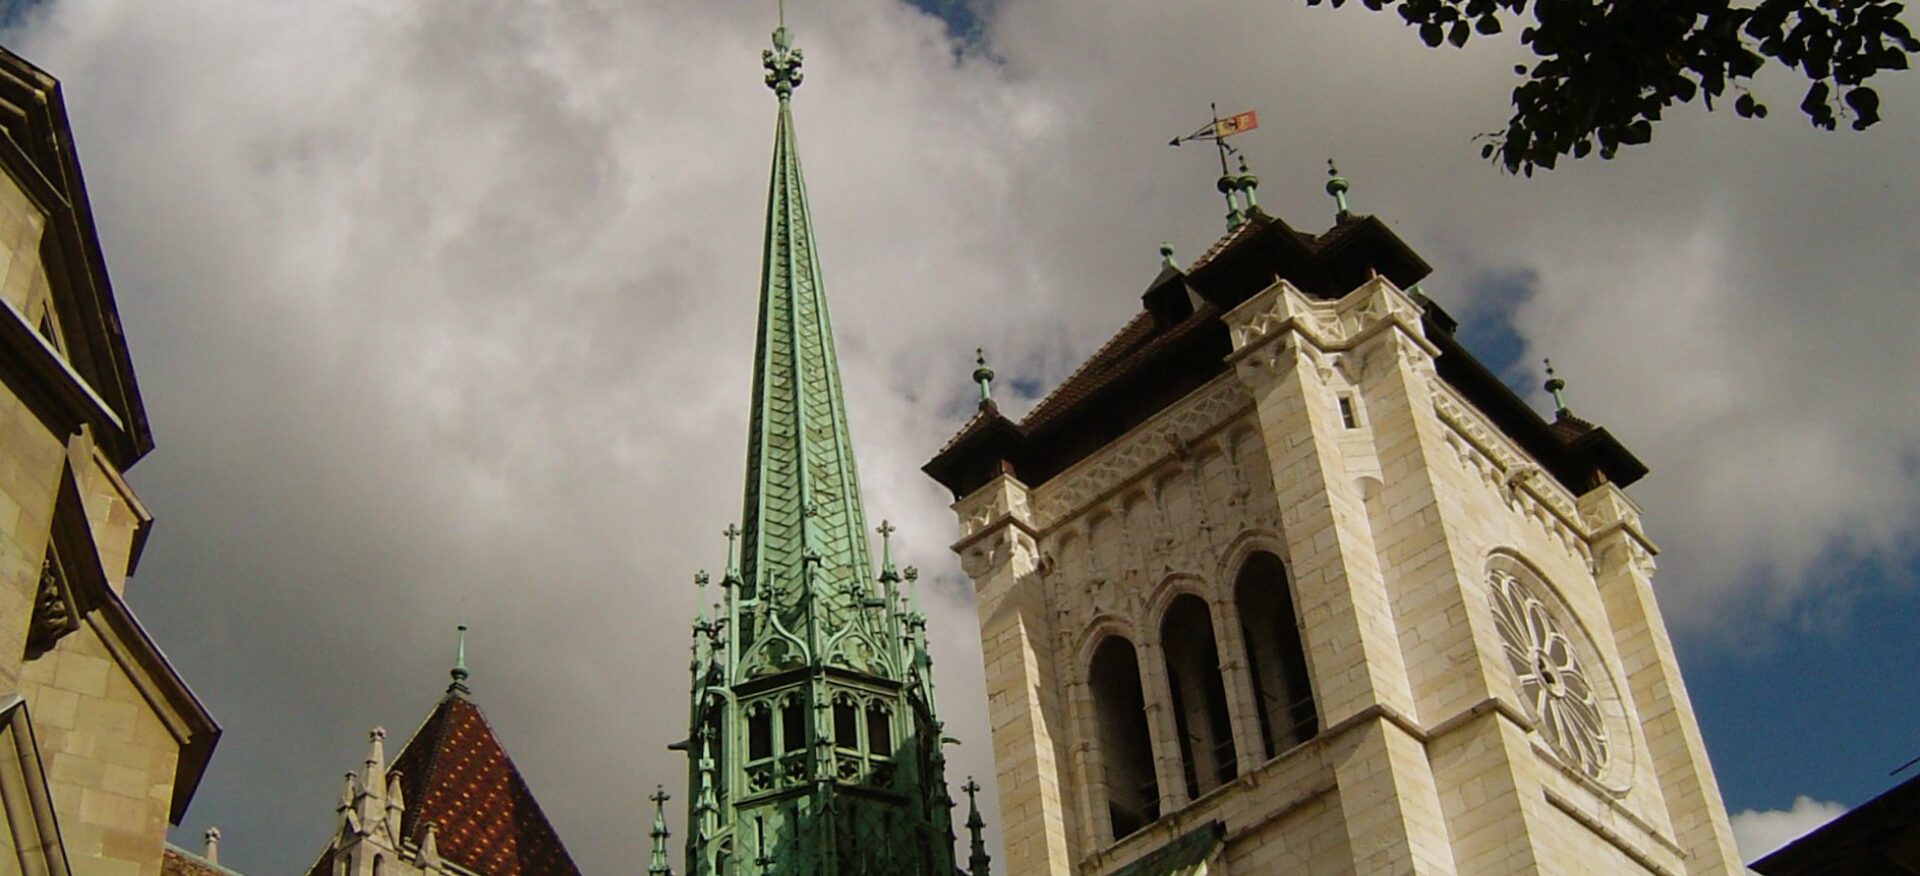 La cathédrale St-Pierre de Genève est l'un des lieux bénéficiant de l'audioguide de la Société de l'histoire de l'art en Suisse (SHAS) | © Marc Buehler/Flickr/CC BY-NC 2.0